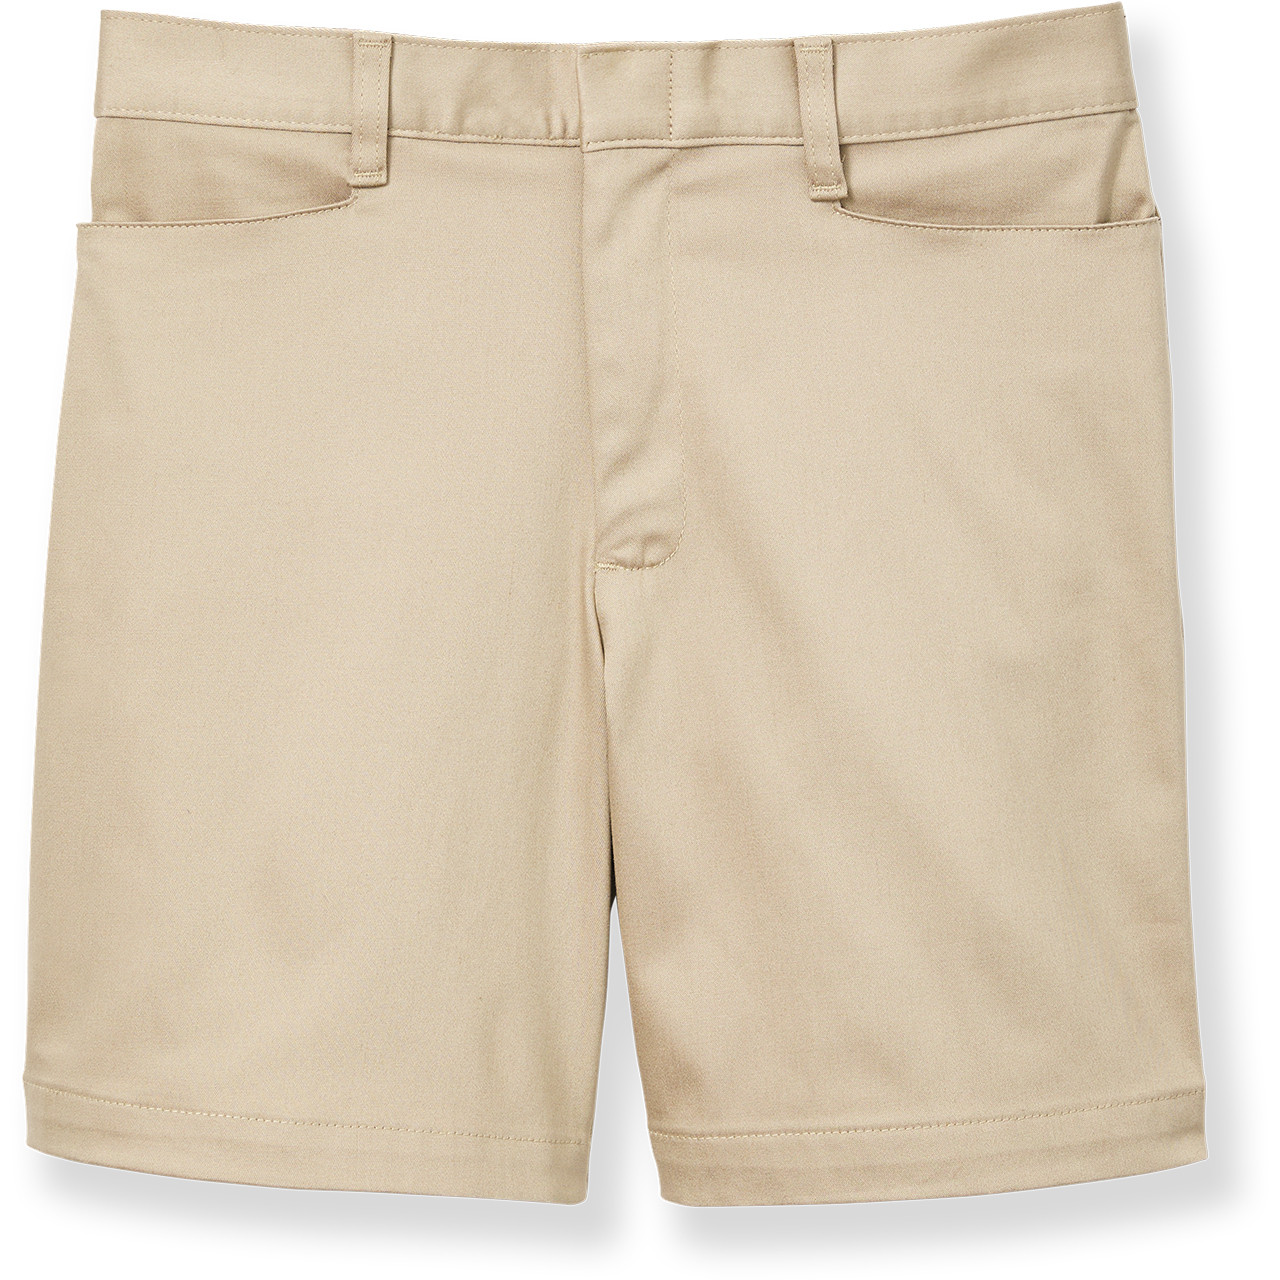 Stretch Shorts [NJ249-4055-KHAKI] - FlynnO'Hara Uniforms